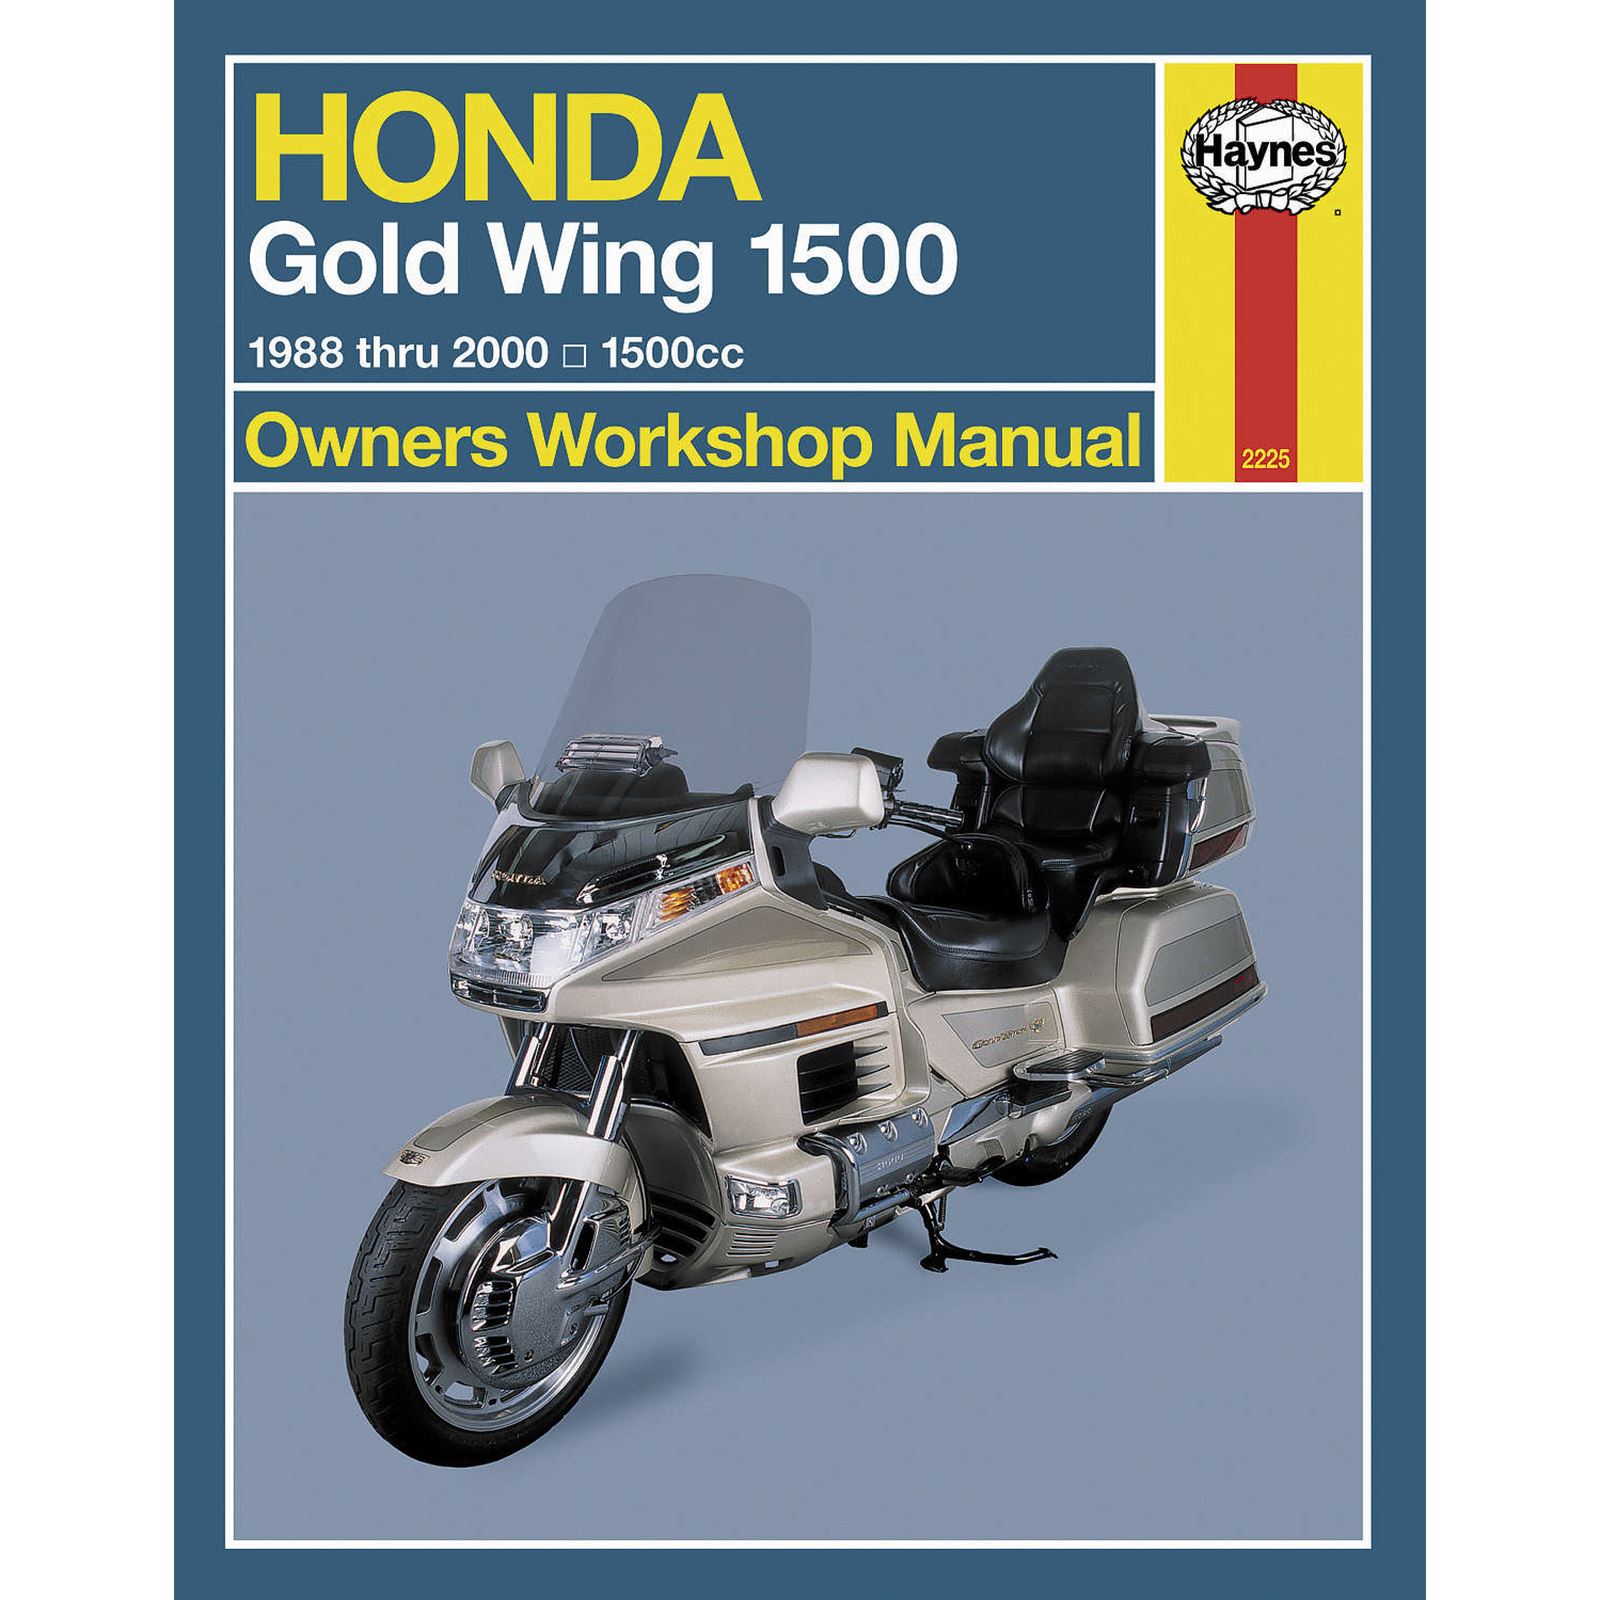 Haynes Manuals Service and Repair Manual for Honda